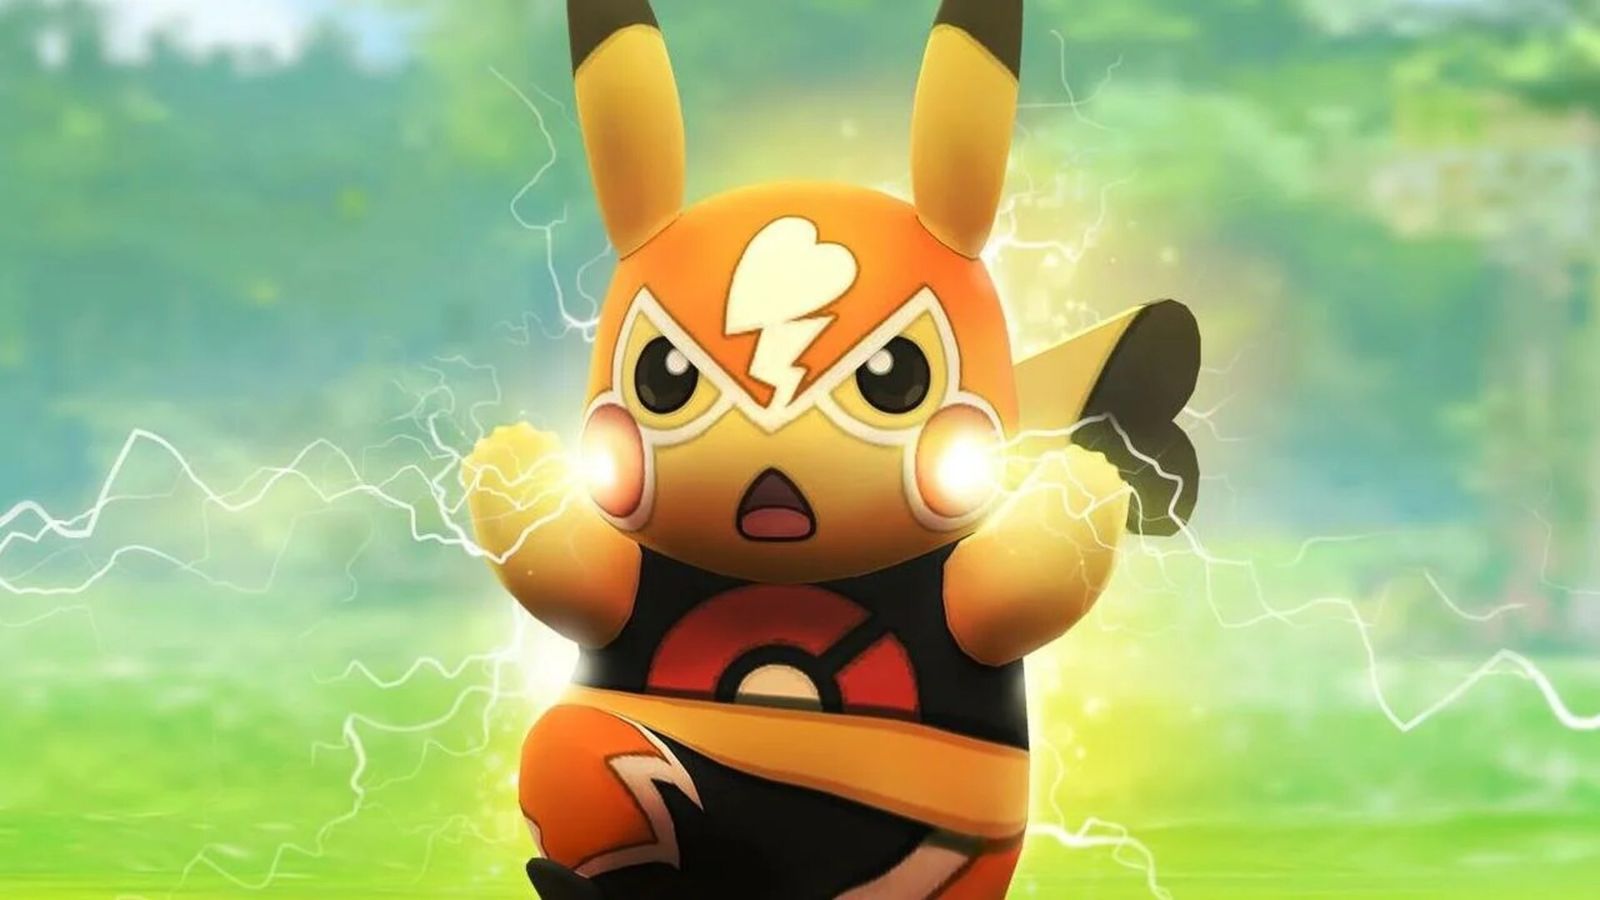 Stardust - Pokémon using electric powers